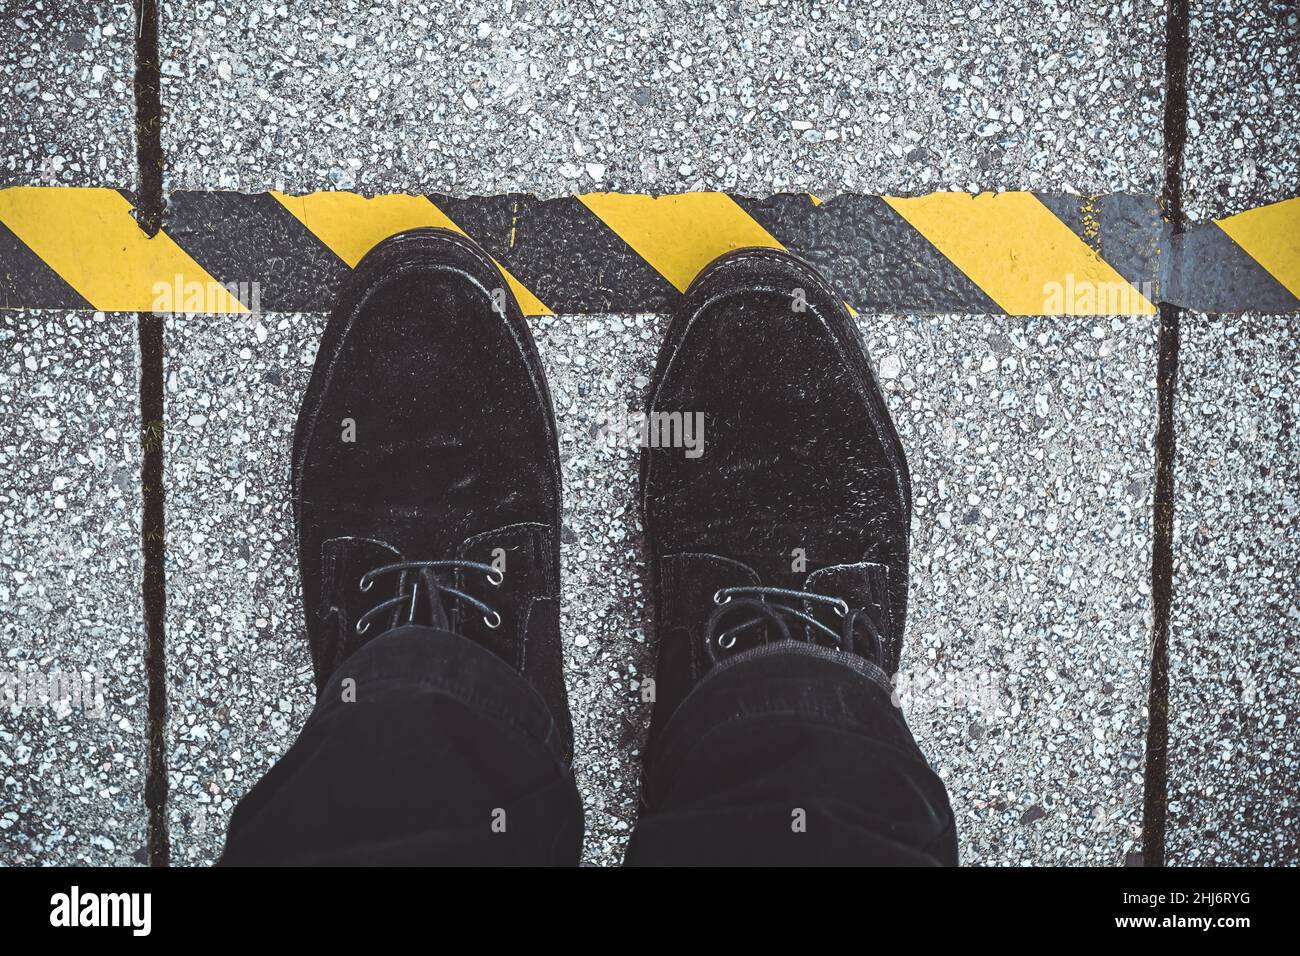 Schuhe vor einer Corona-Abstands-Markierung auf dem Boden Stock Photo